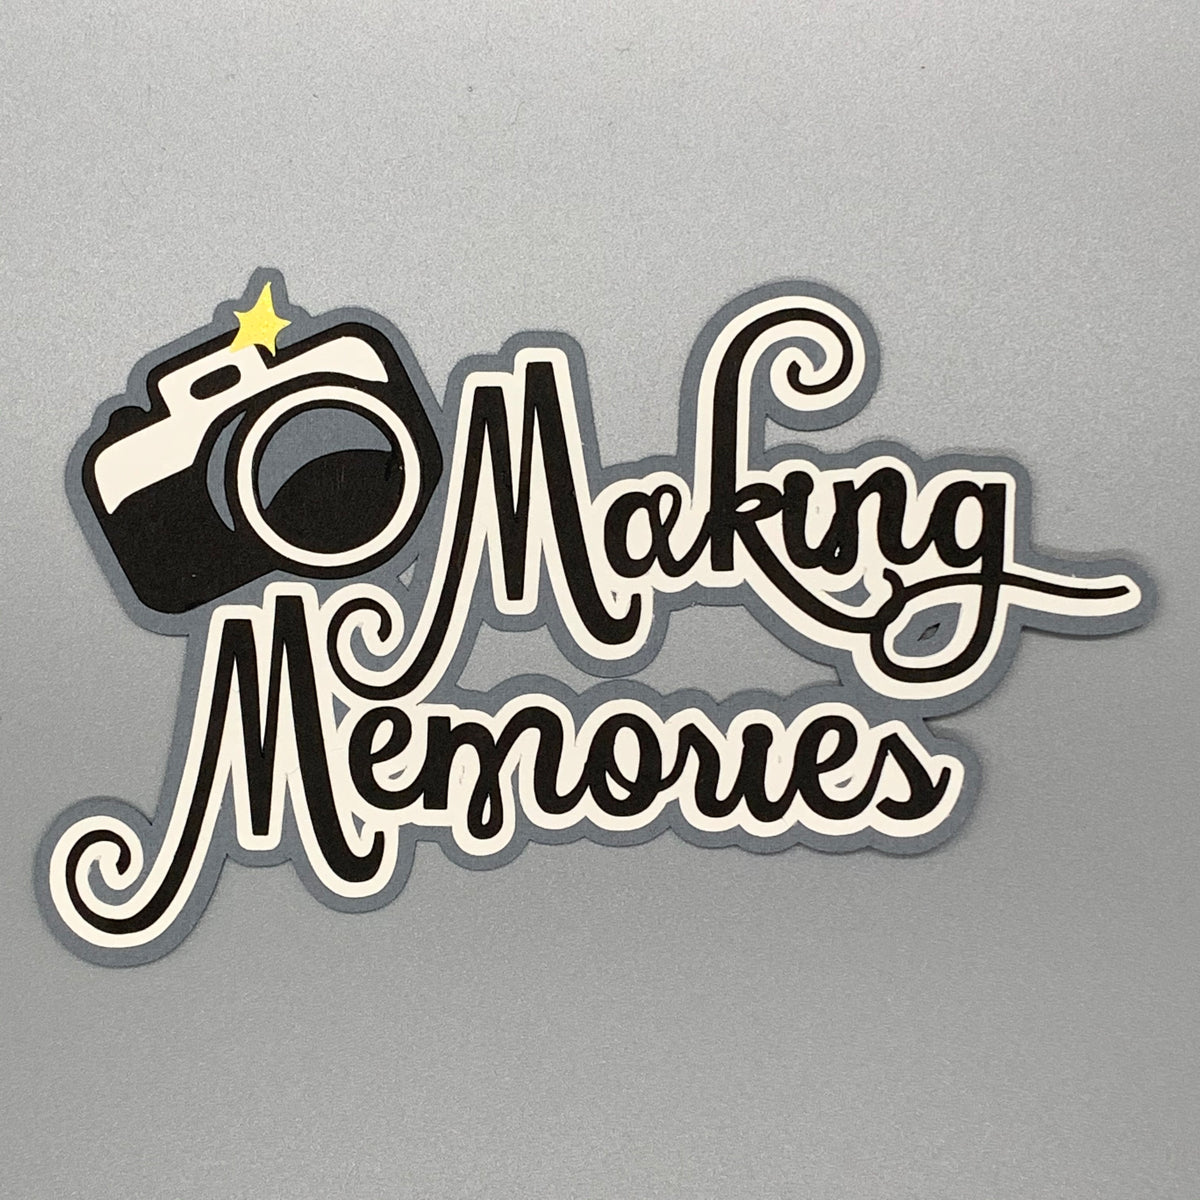 Making Memories Tag Maker Tool - New!